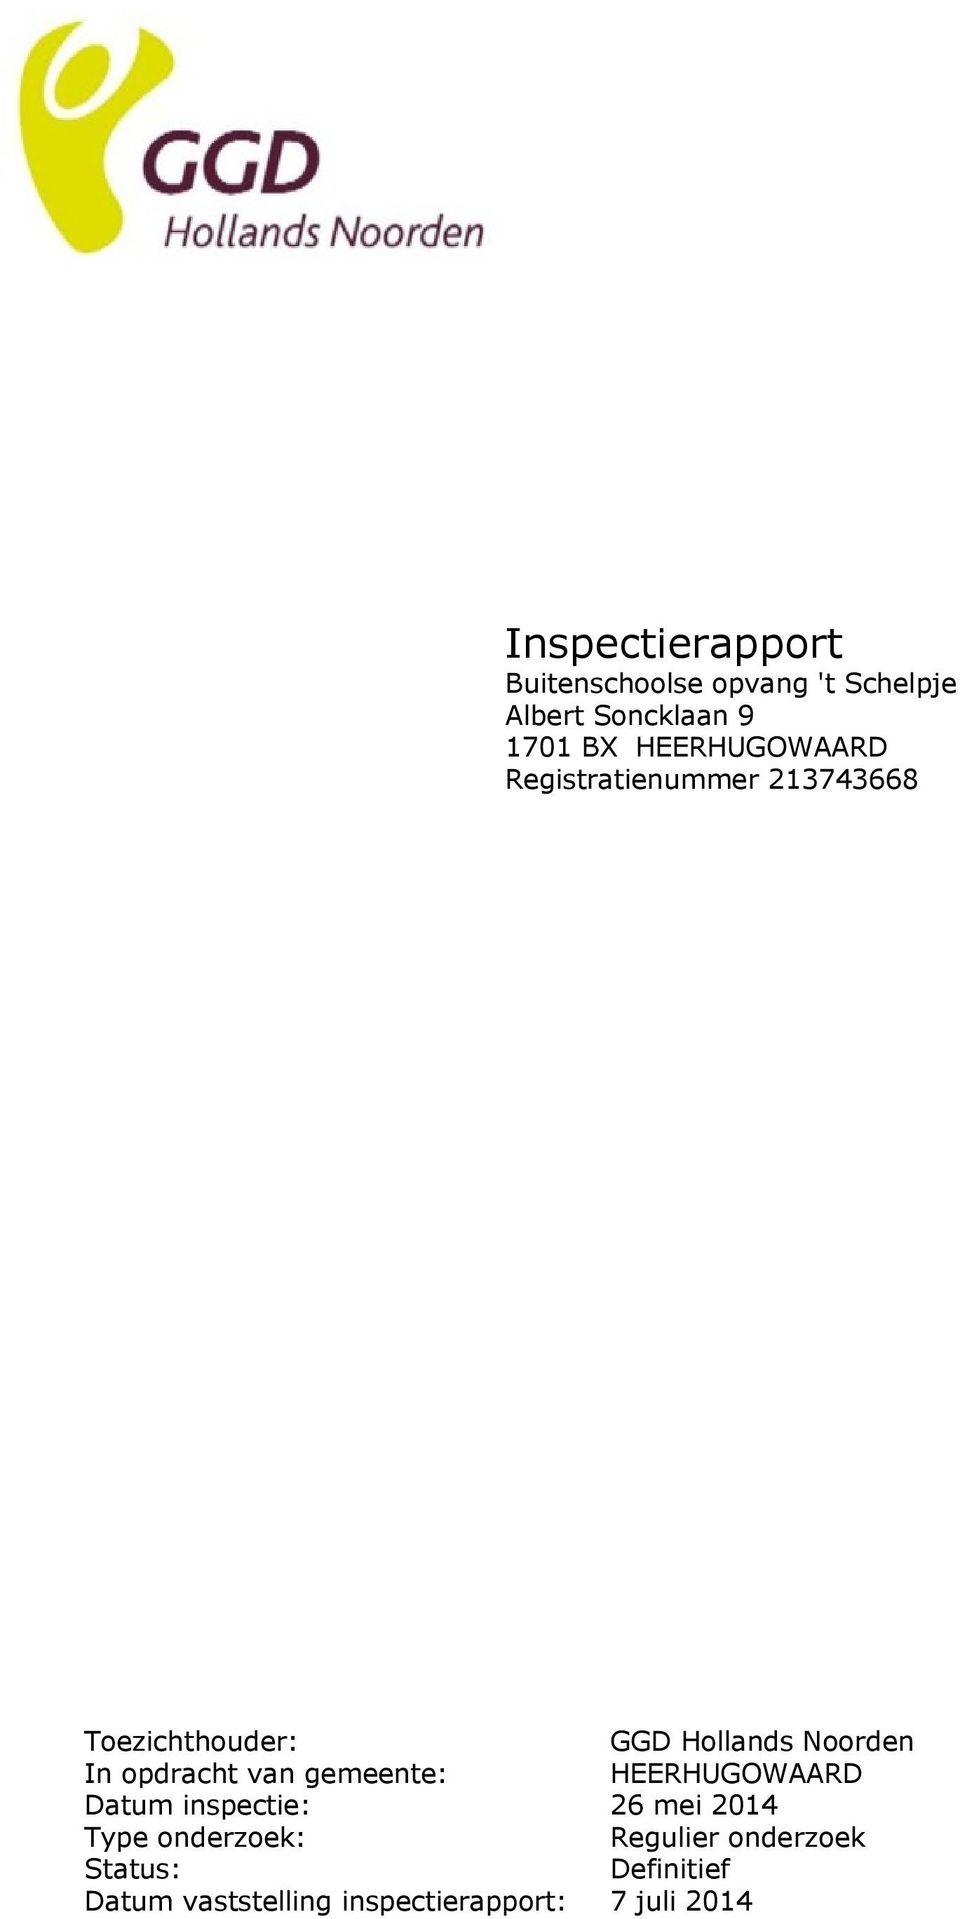 opdracht van gemeente: HEERHUGOWAARD Datum inspectie: 26 mei 2014 Type onderzoek: